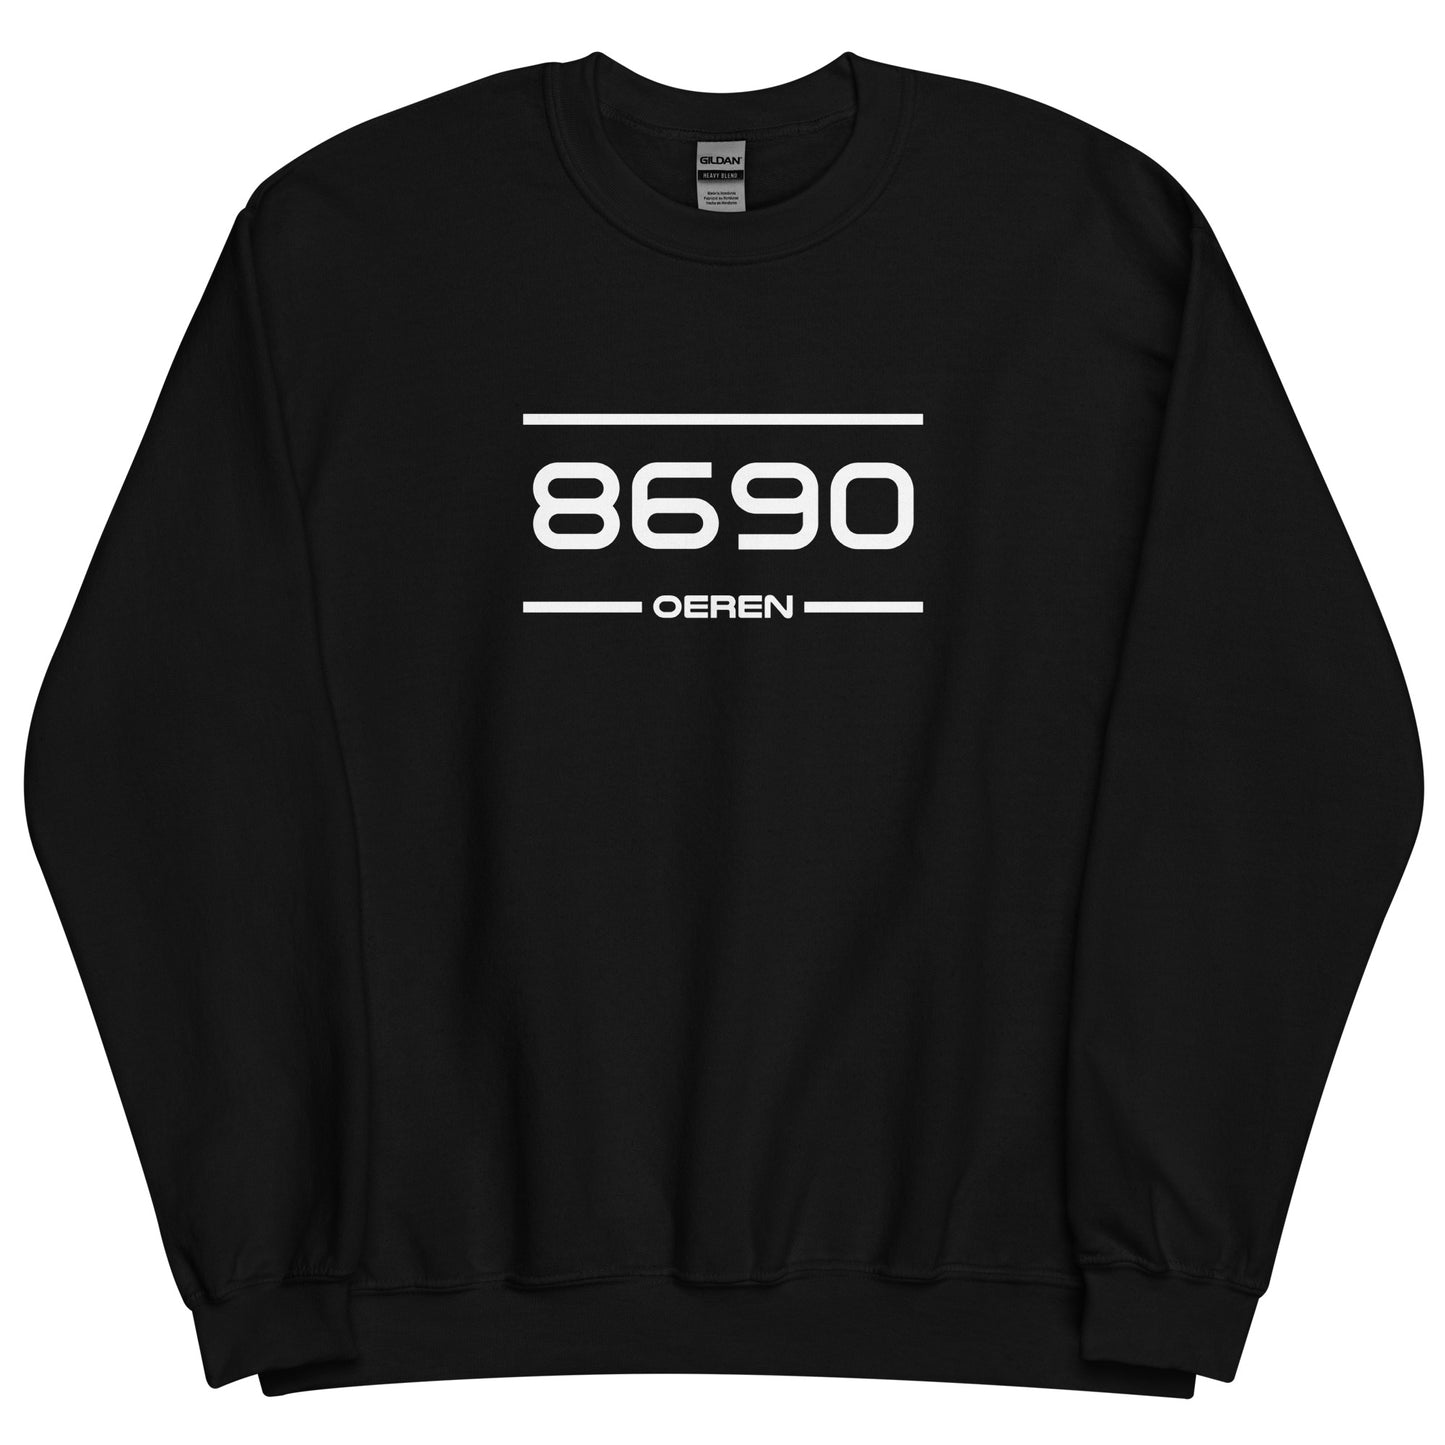 Sweater - 8690 - Oeren (M/V)